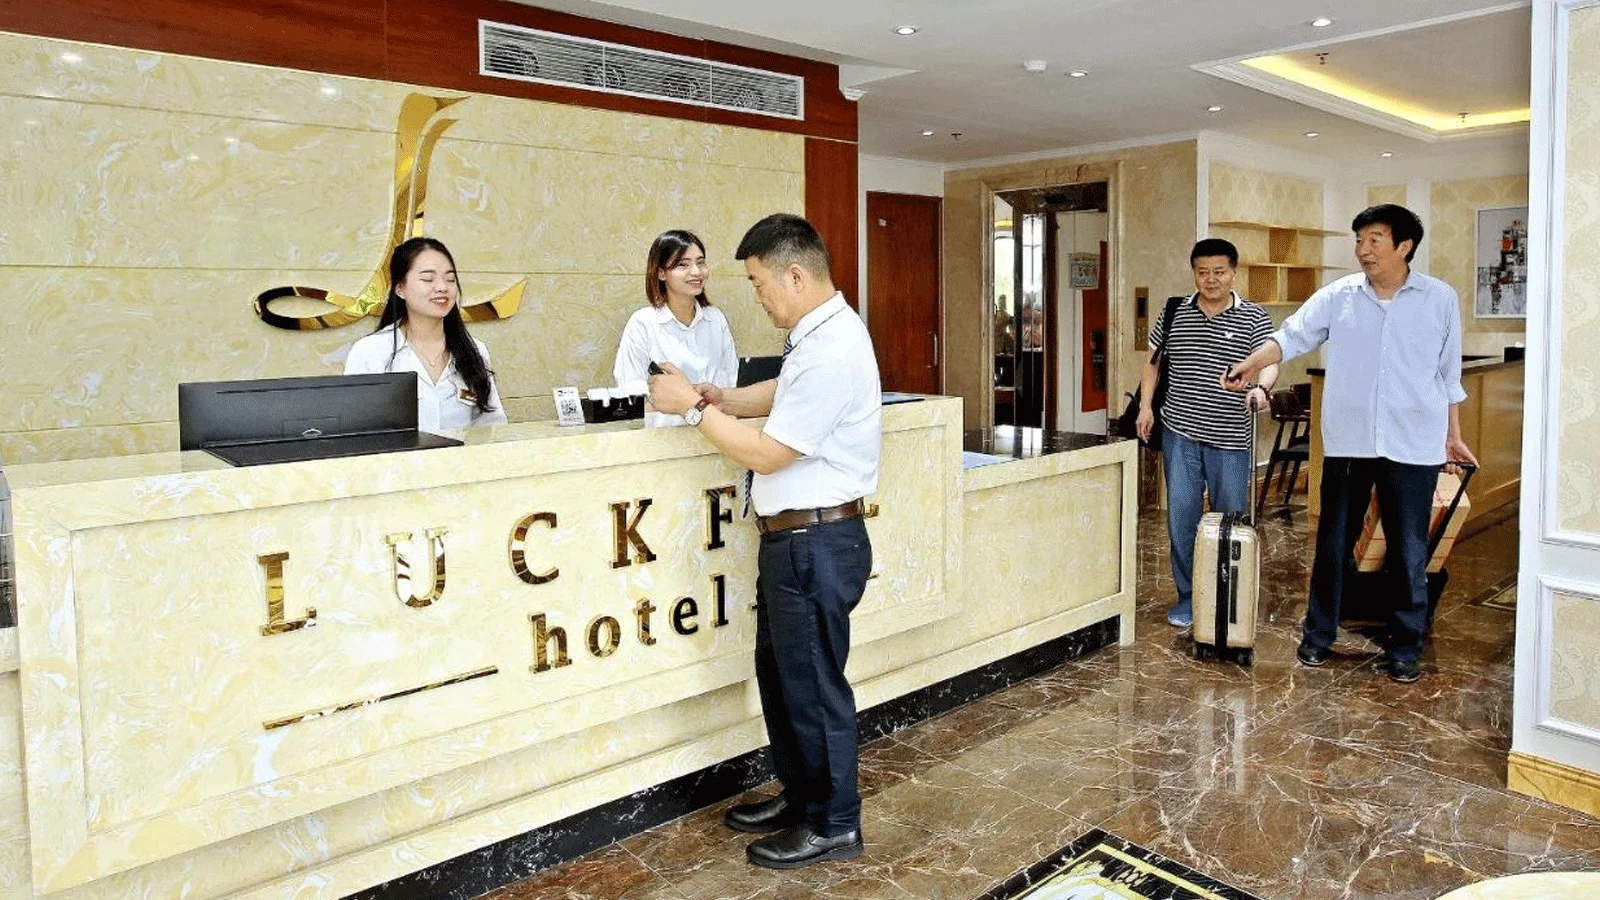 Khách sạn Luckful Hotel Hà Nội